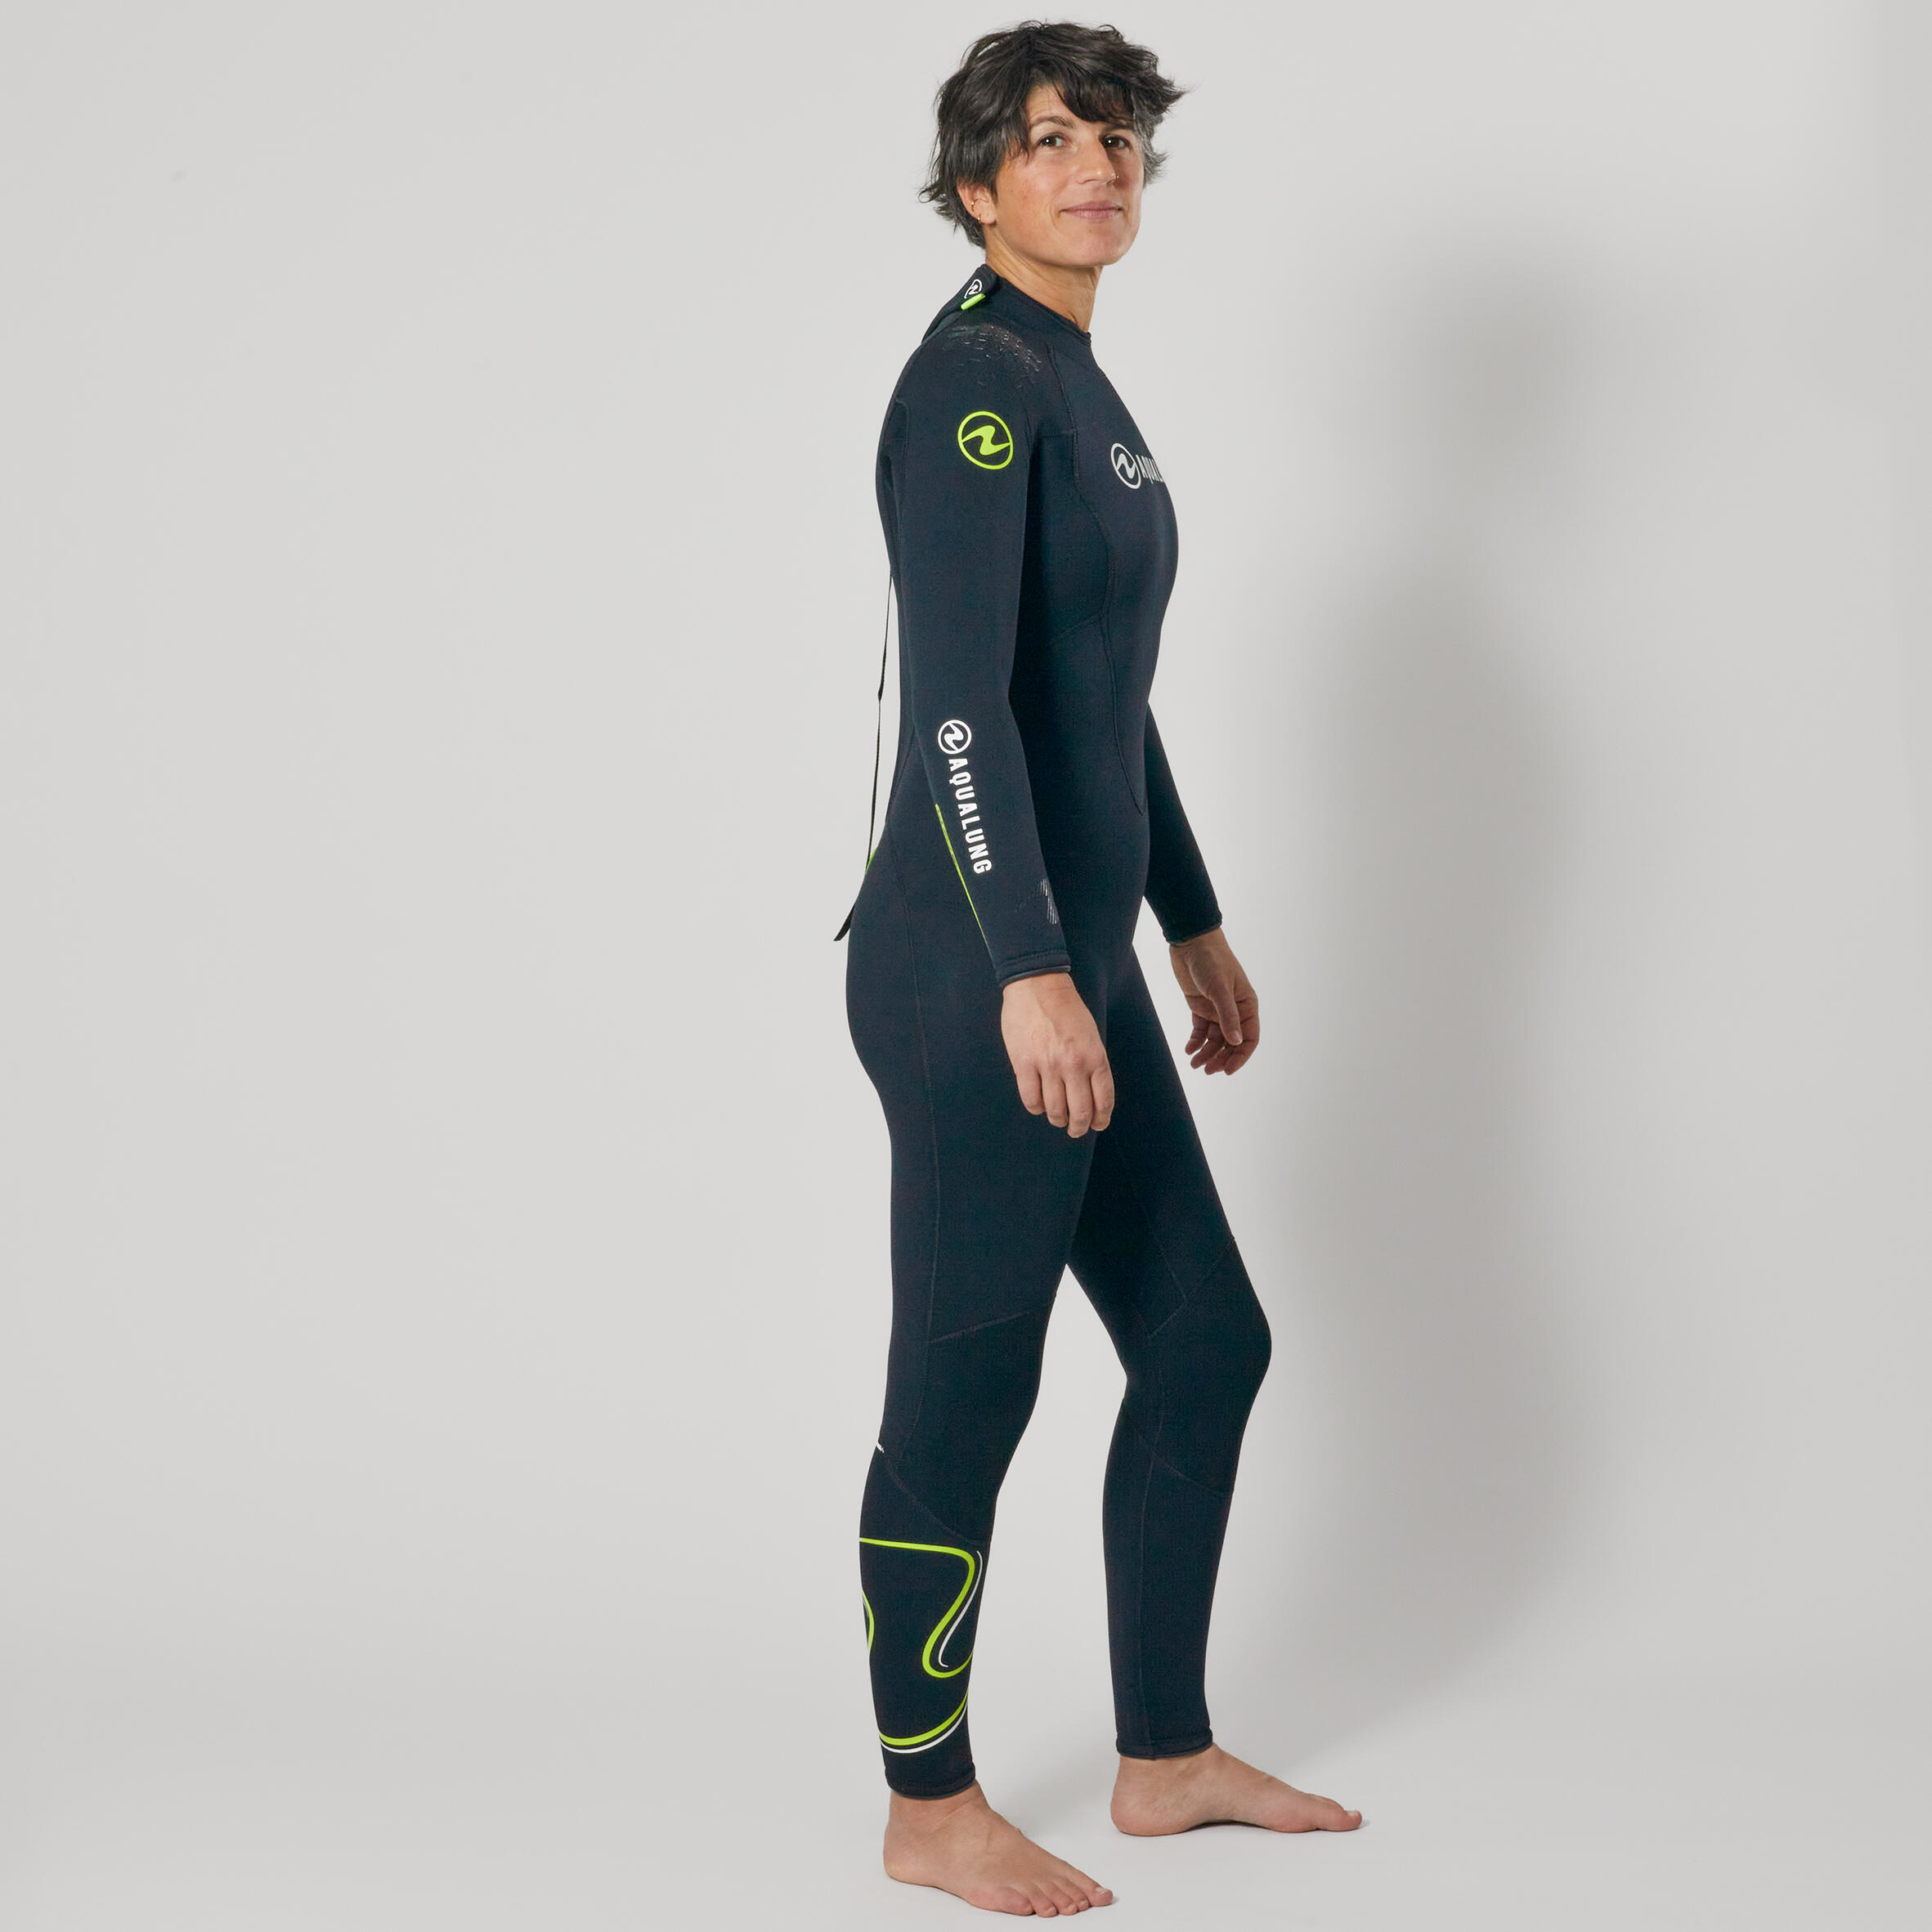 Women's diving wetsuit Aqualung 5.5 mm neoprene - WAVE Black/Yellow 3/8